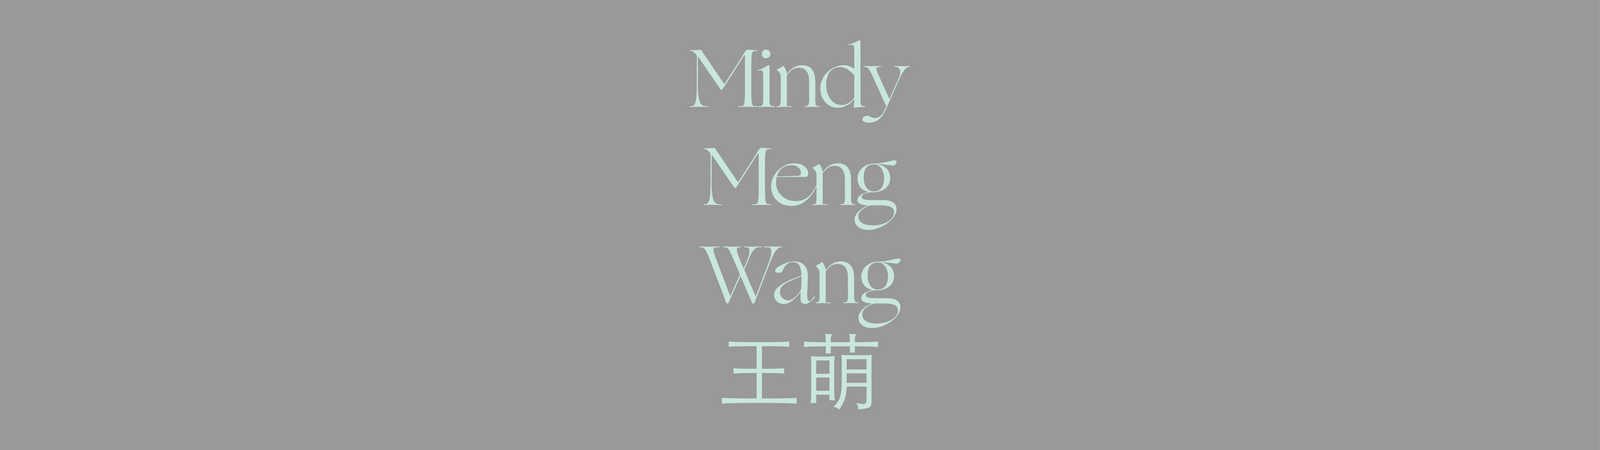 Mindy Meng Wang